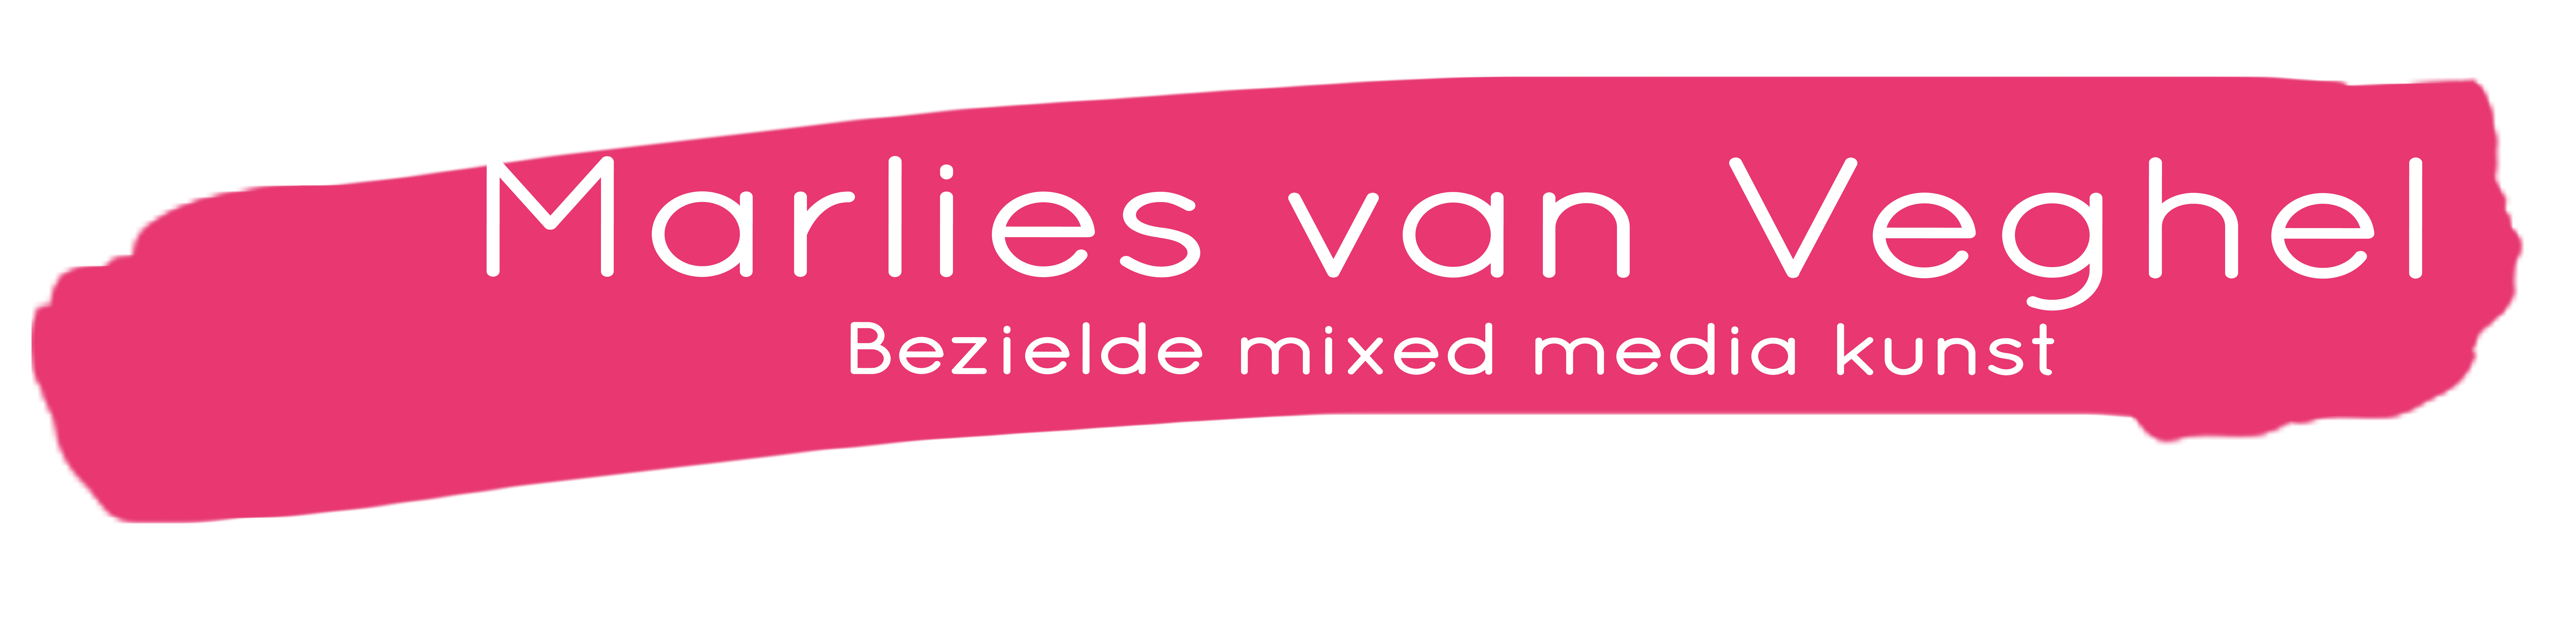 Marlies van Veghel